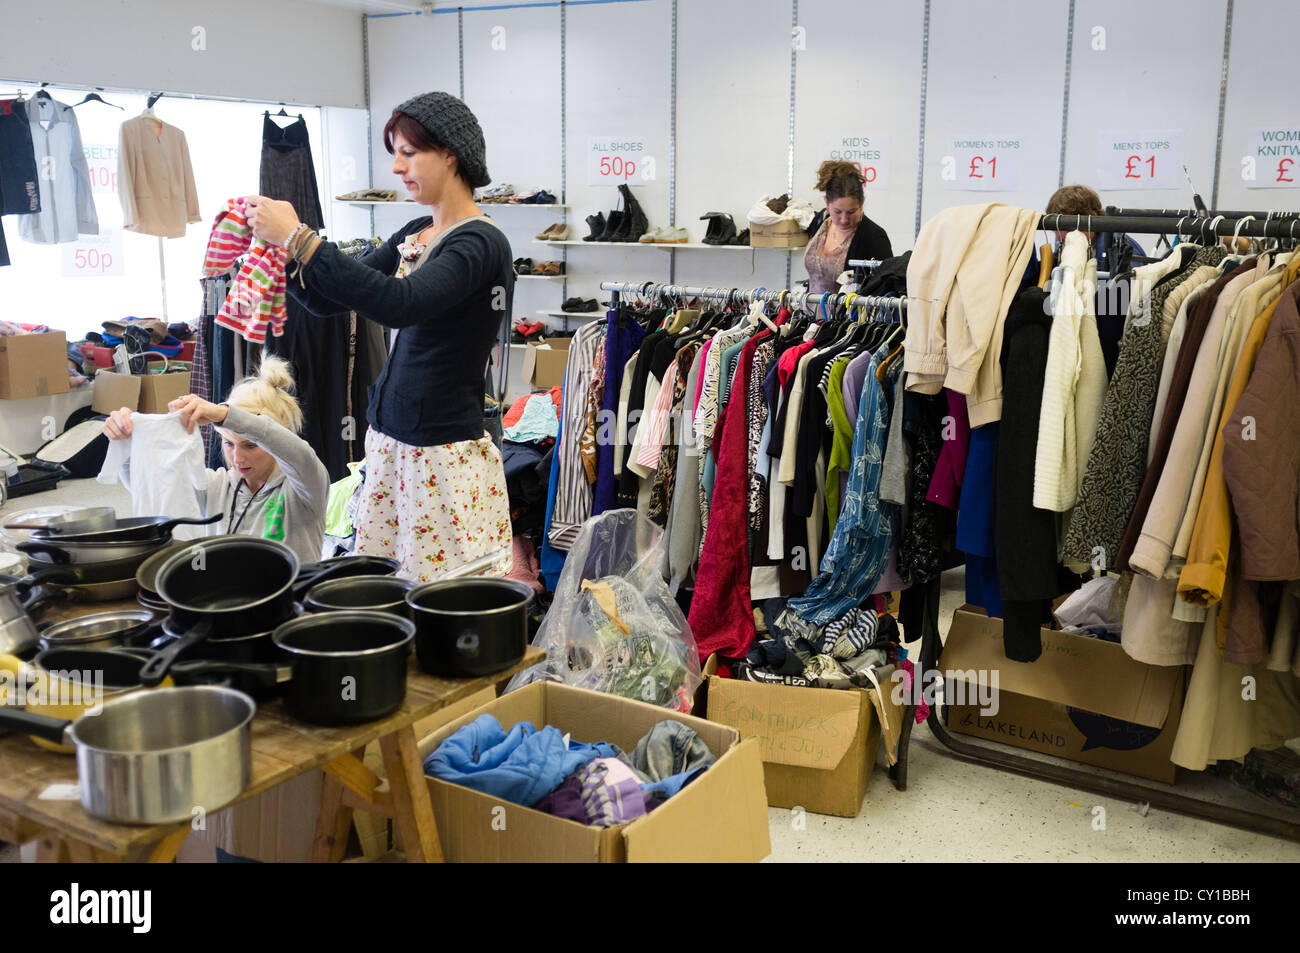 Frauen surfen Racks von Kleidung aus zweiter Hand und waren auf den Verkauf  in einem Charity Shop Sparsamkeit speichern Wohltätigkeitsverkauf uk  Stockfotografie - Alamy